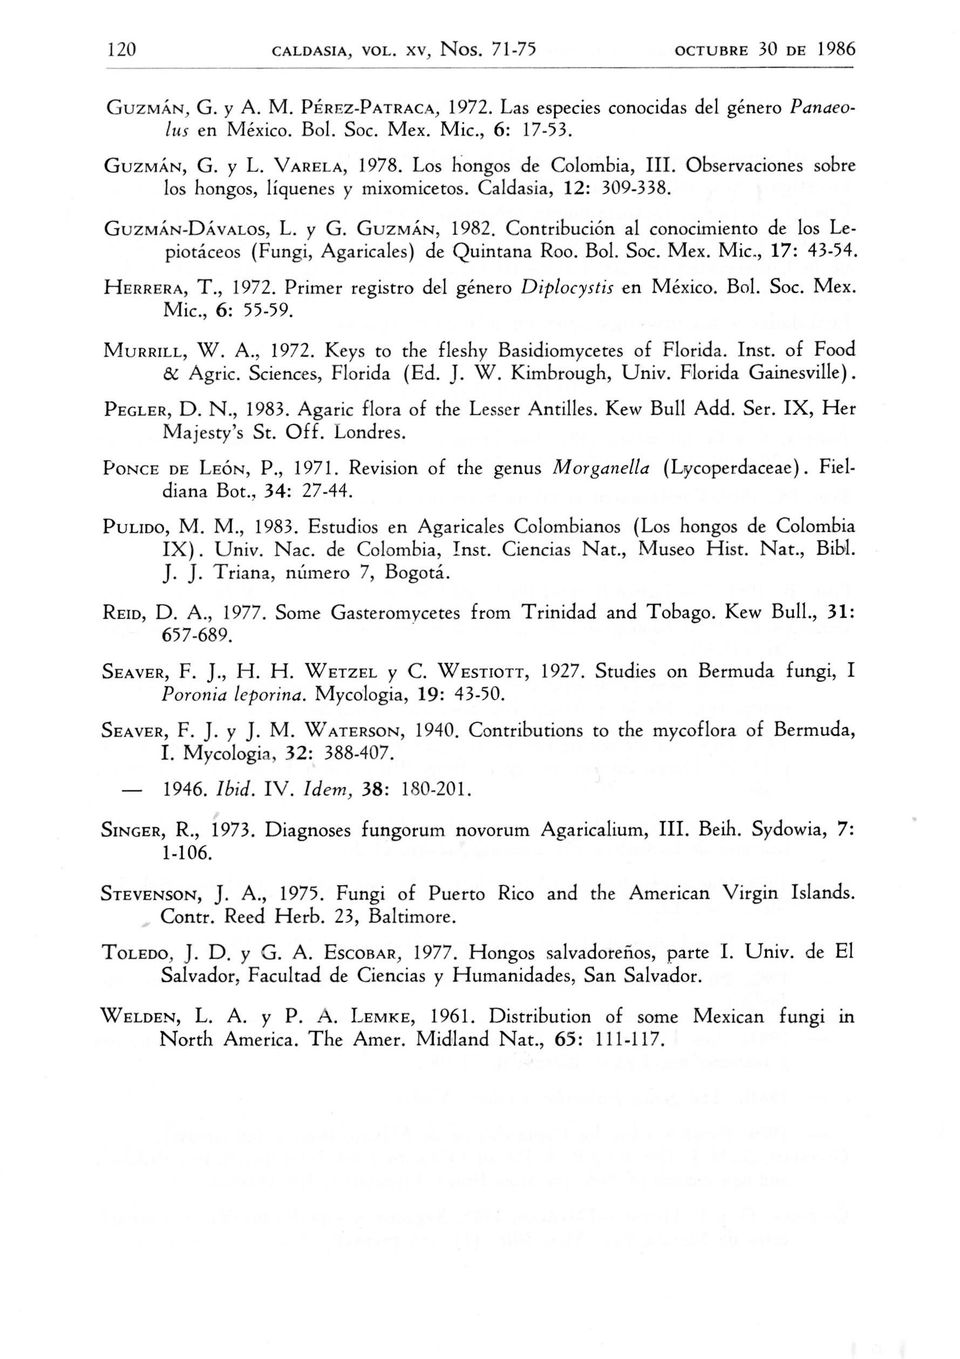 Contribucion al conocimiento de los Lepiotaceos (Fungi, Agaricales) de Quintana Roo. Bo1. Soc. Mex, Mic., 17: 43-54. HERRERA, T., 1972. Primer registro del genero Diplocystis en Mexico. Bo1. Soc. Mex. Mic., 6: 55-59.